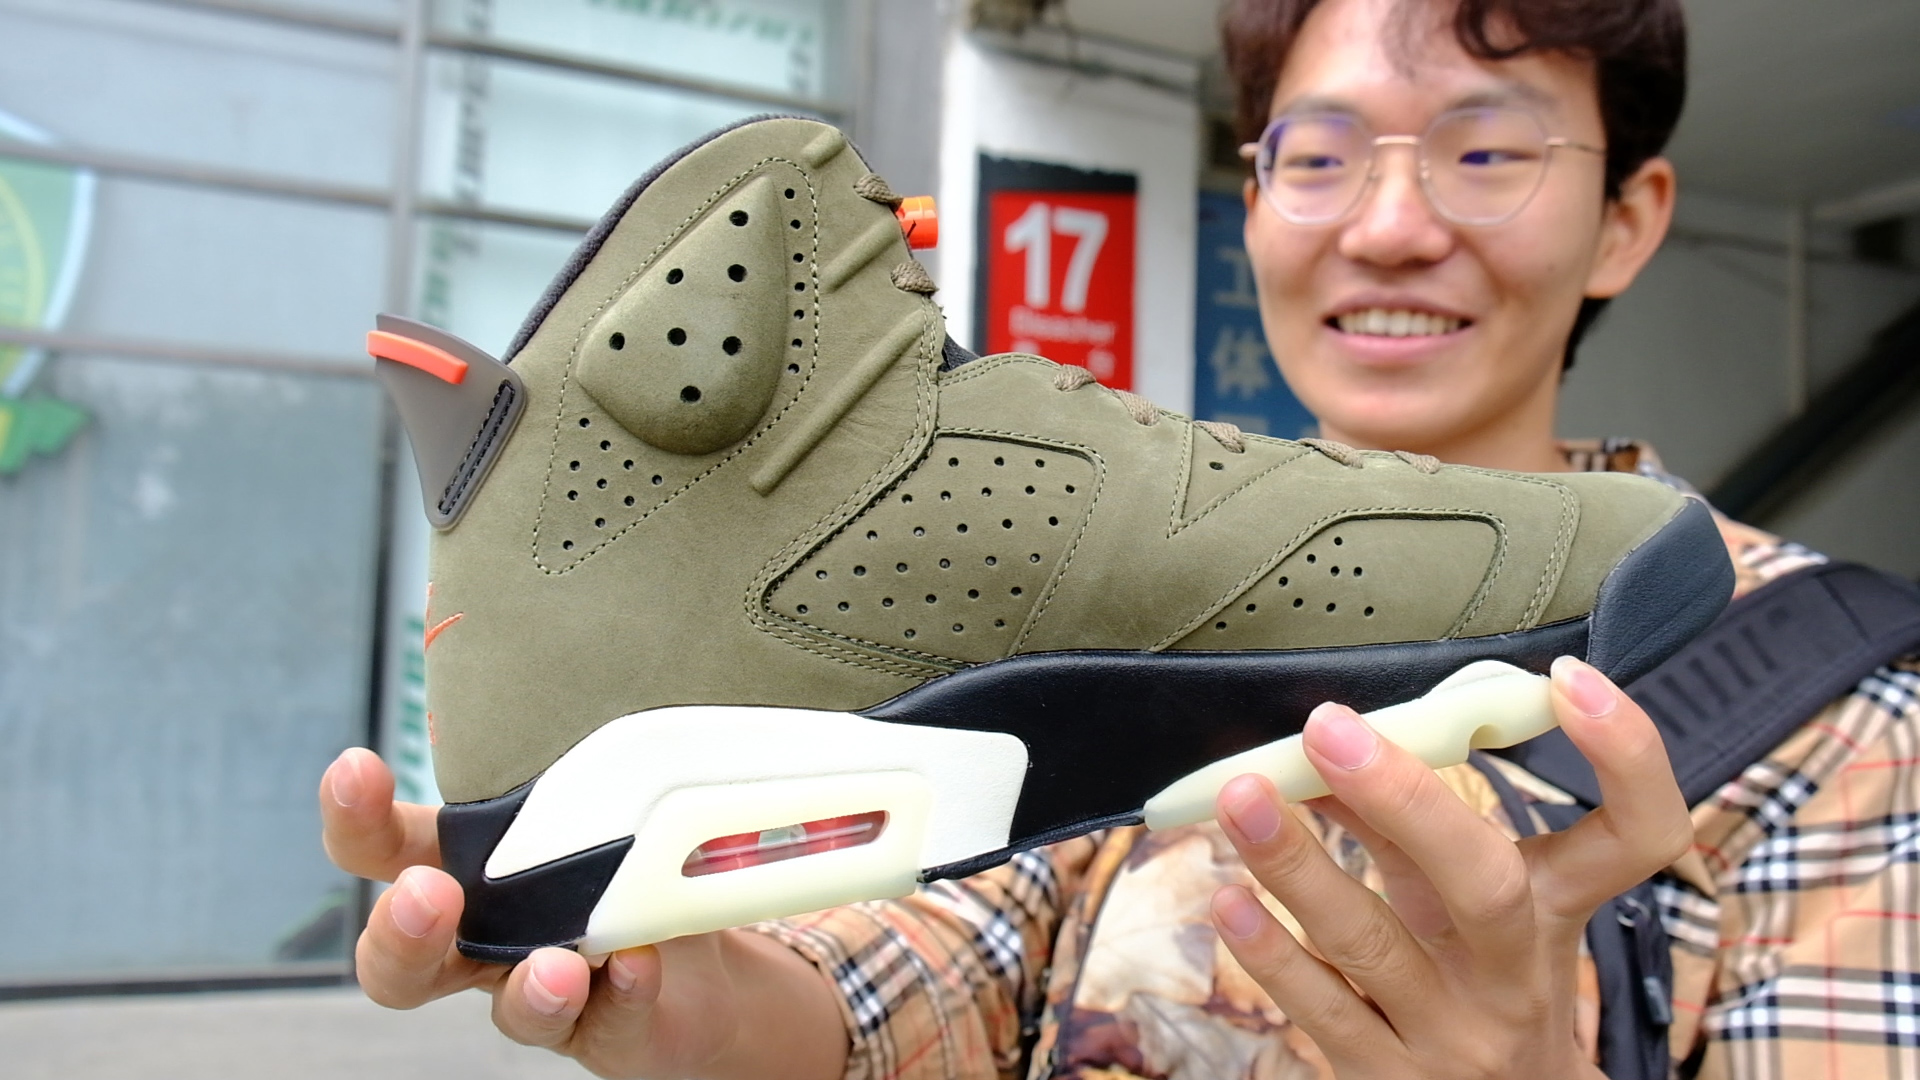 دلالان کفش های کتانی چینی سرگرمی سابق هیپستر را به یک تجارت پر فراز و نشیب تبدیل می کنند  زیبایی